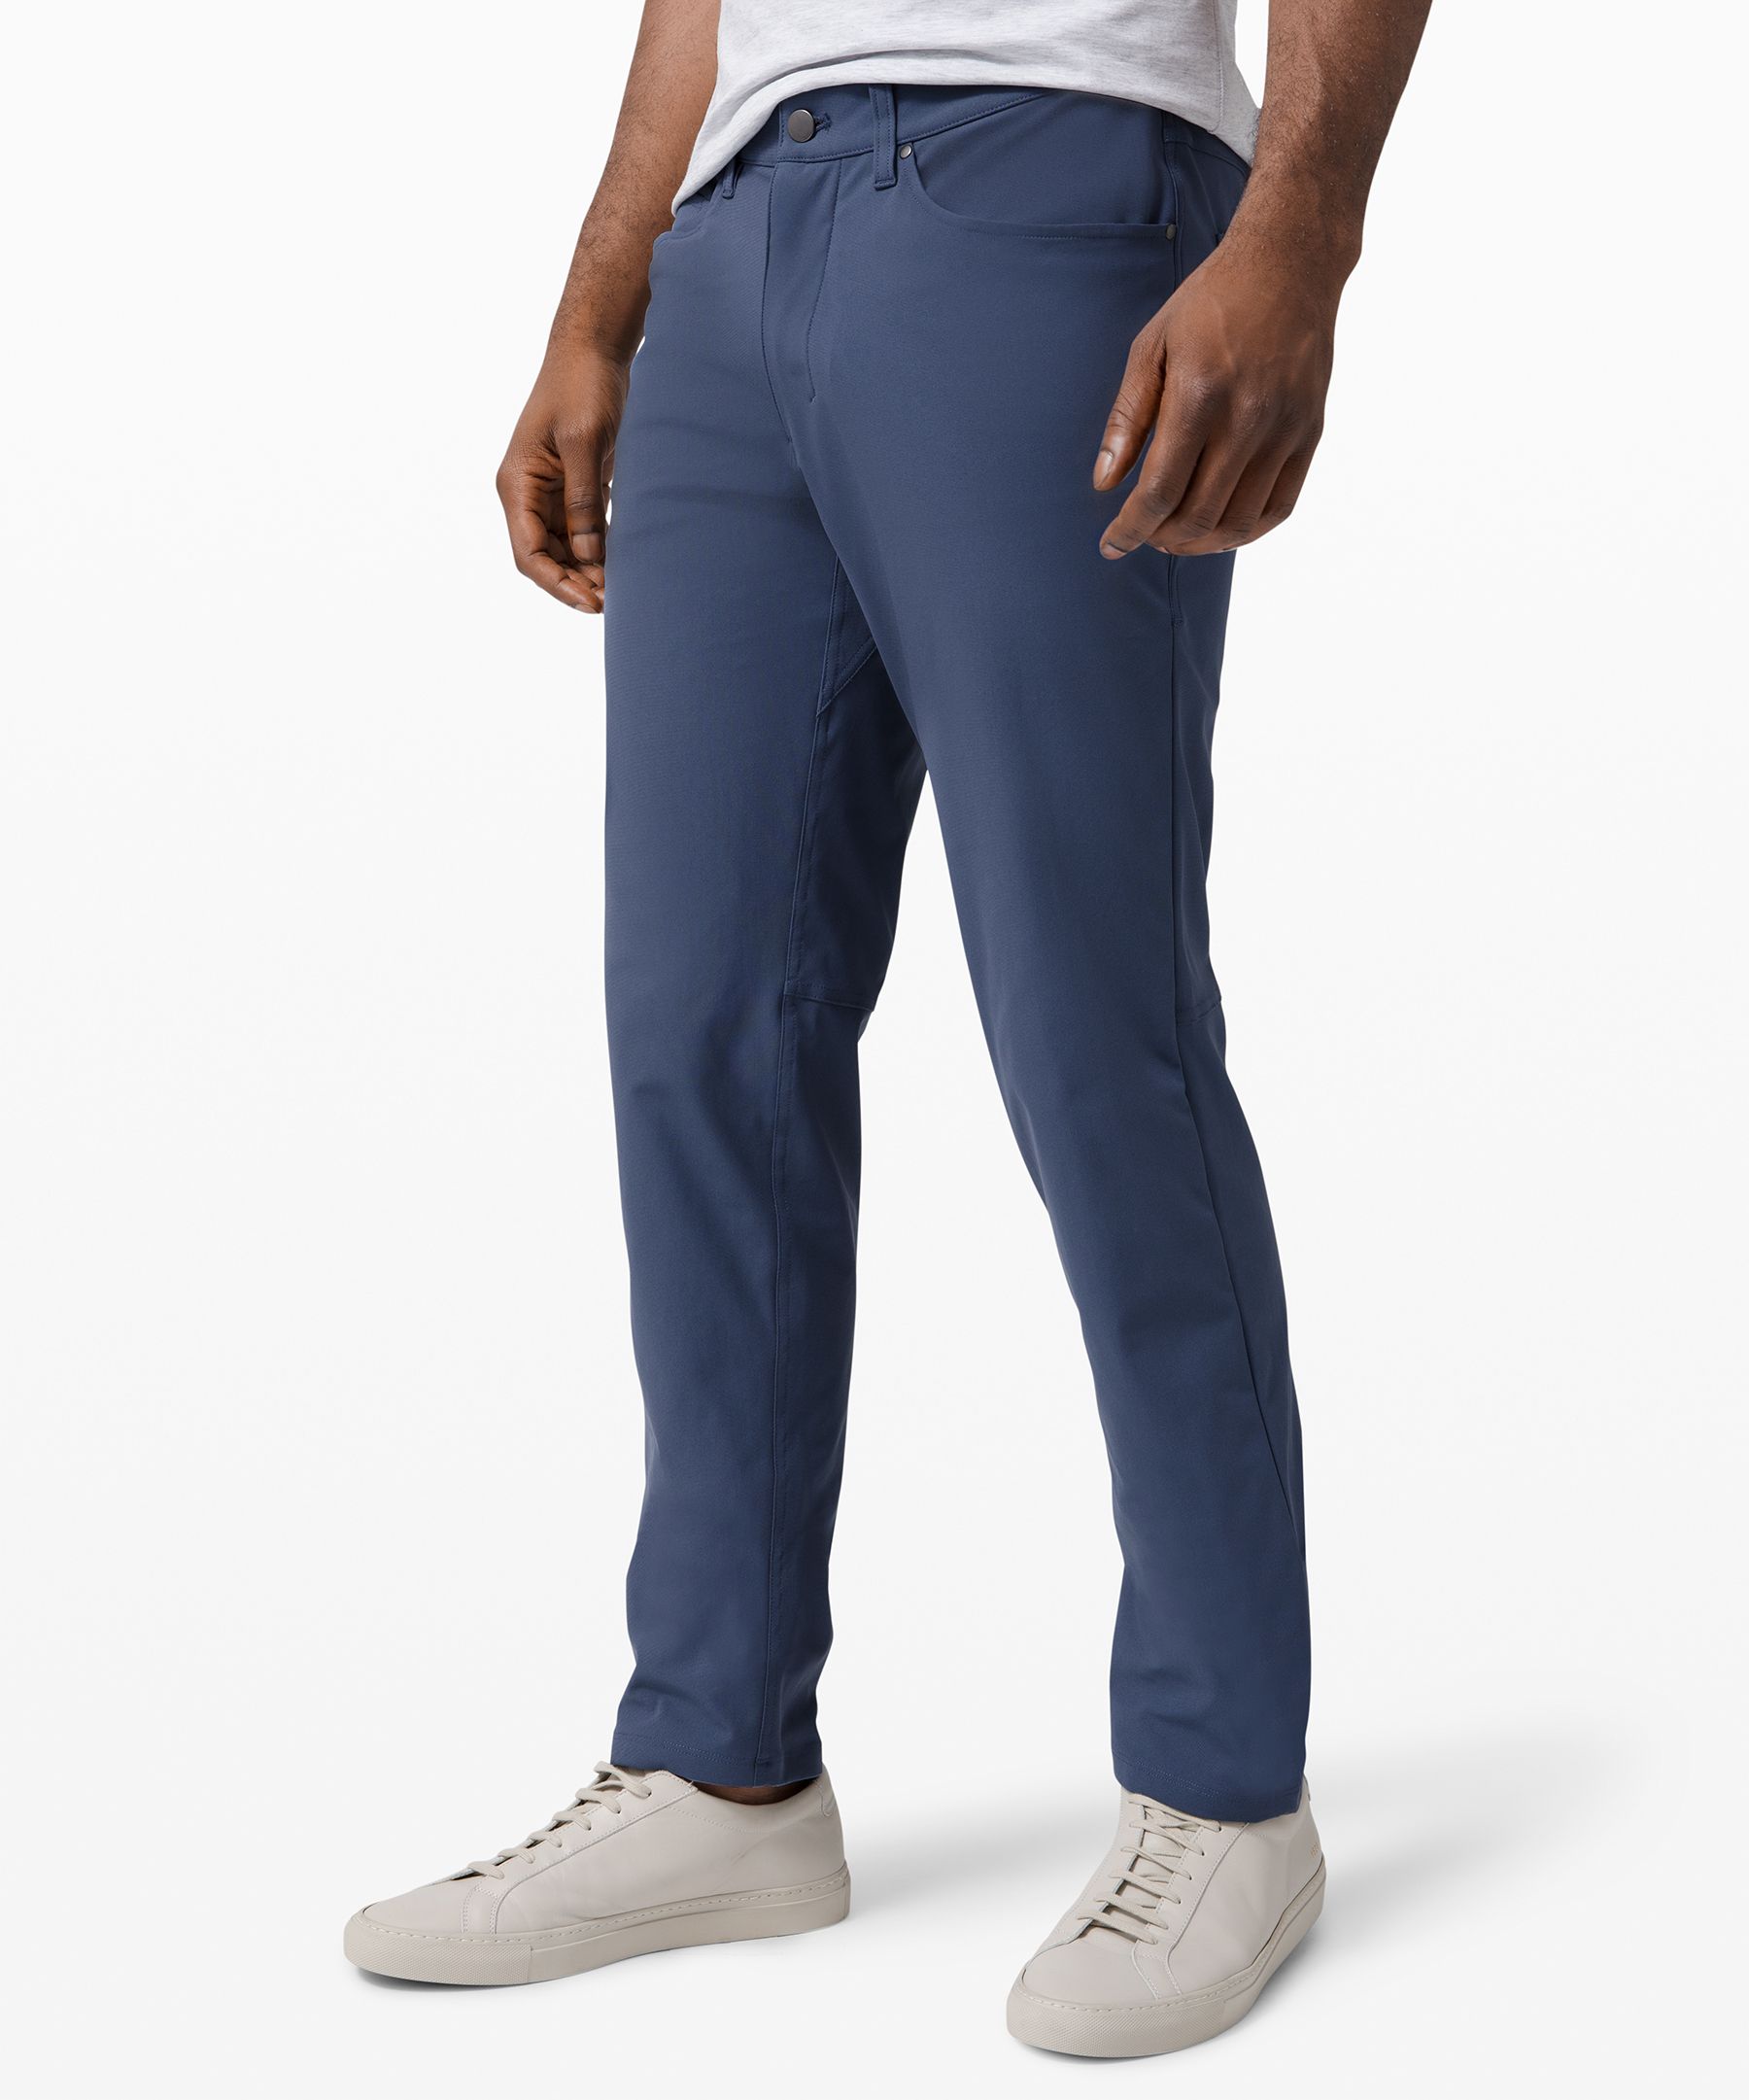 lululemon blue pants